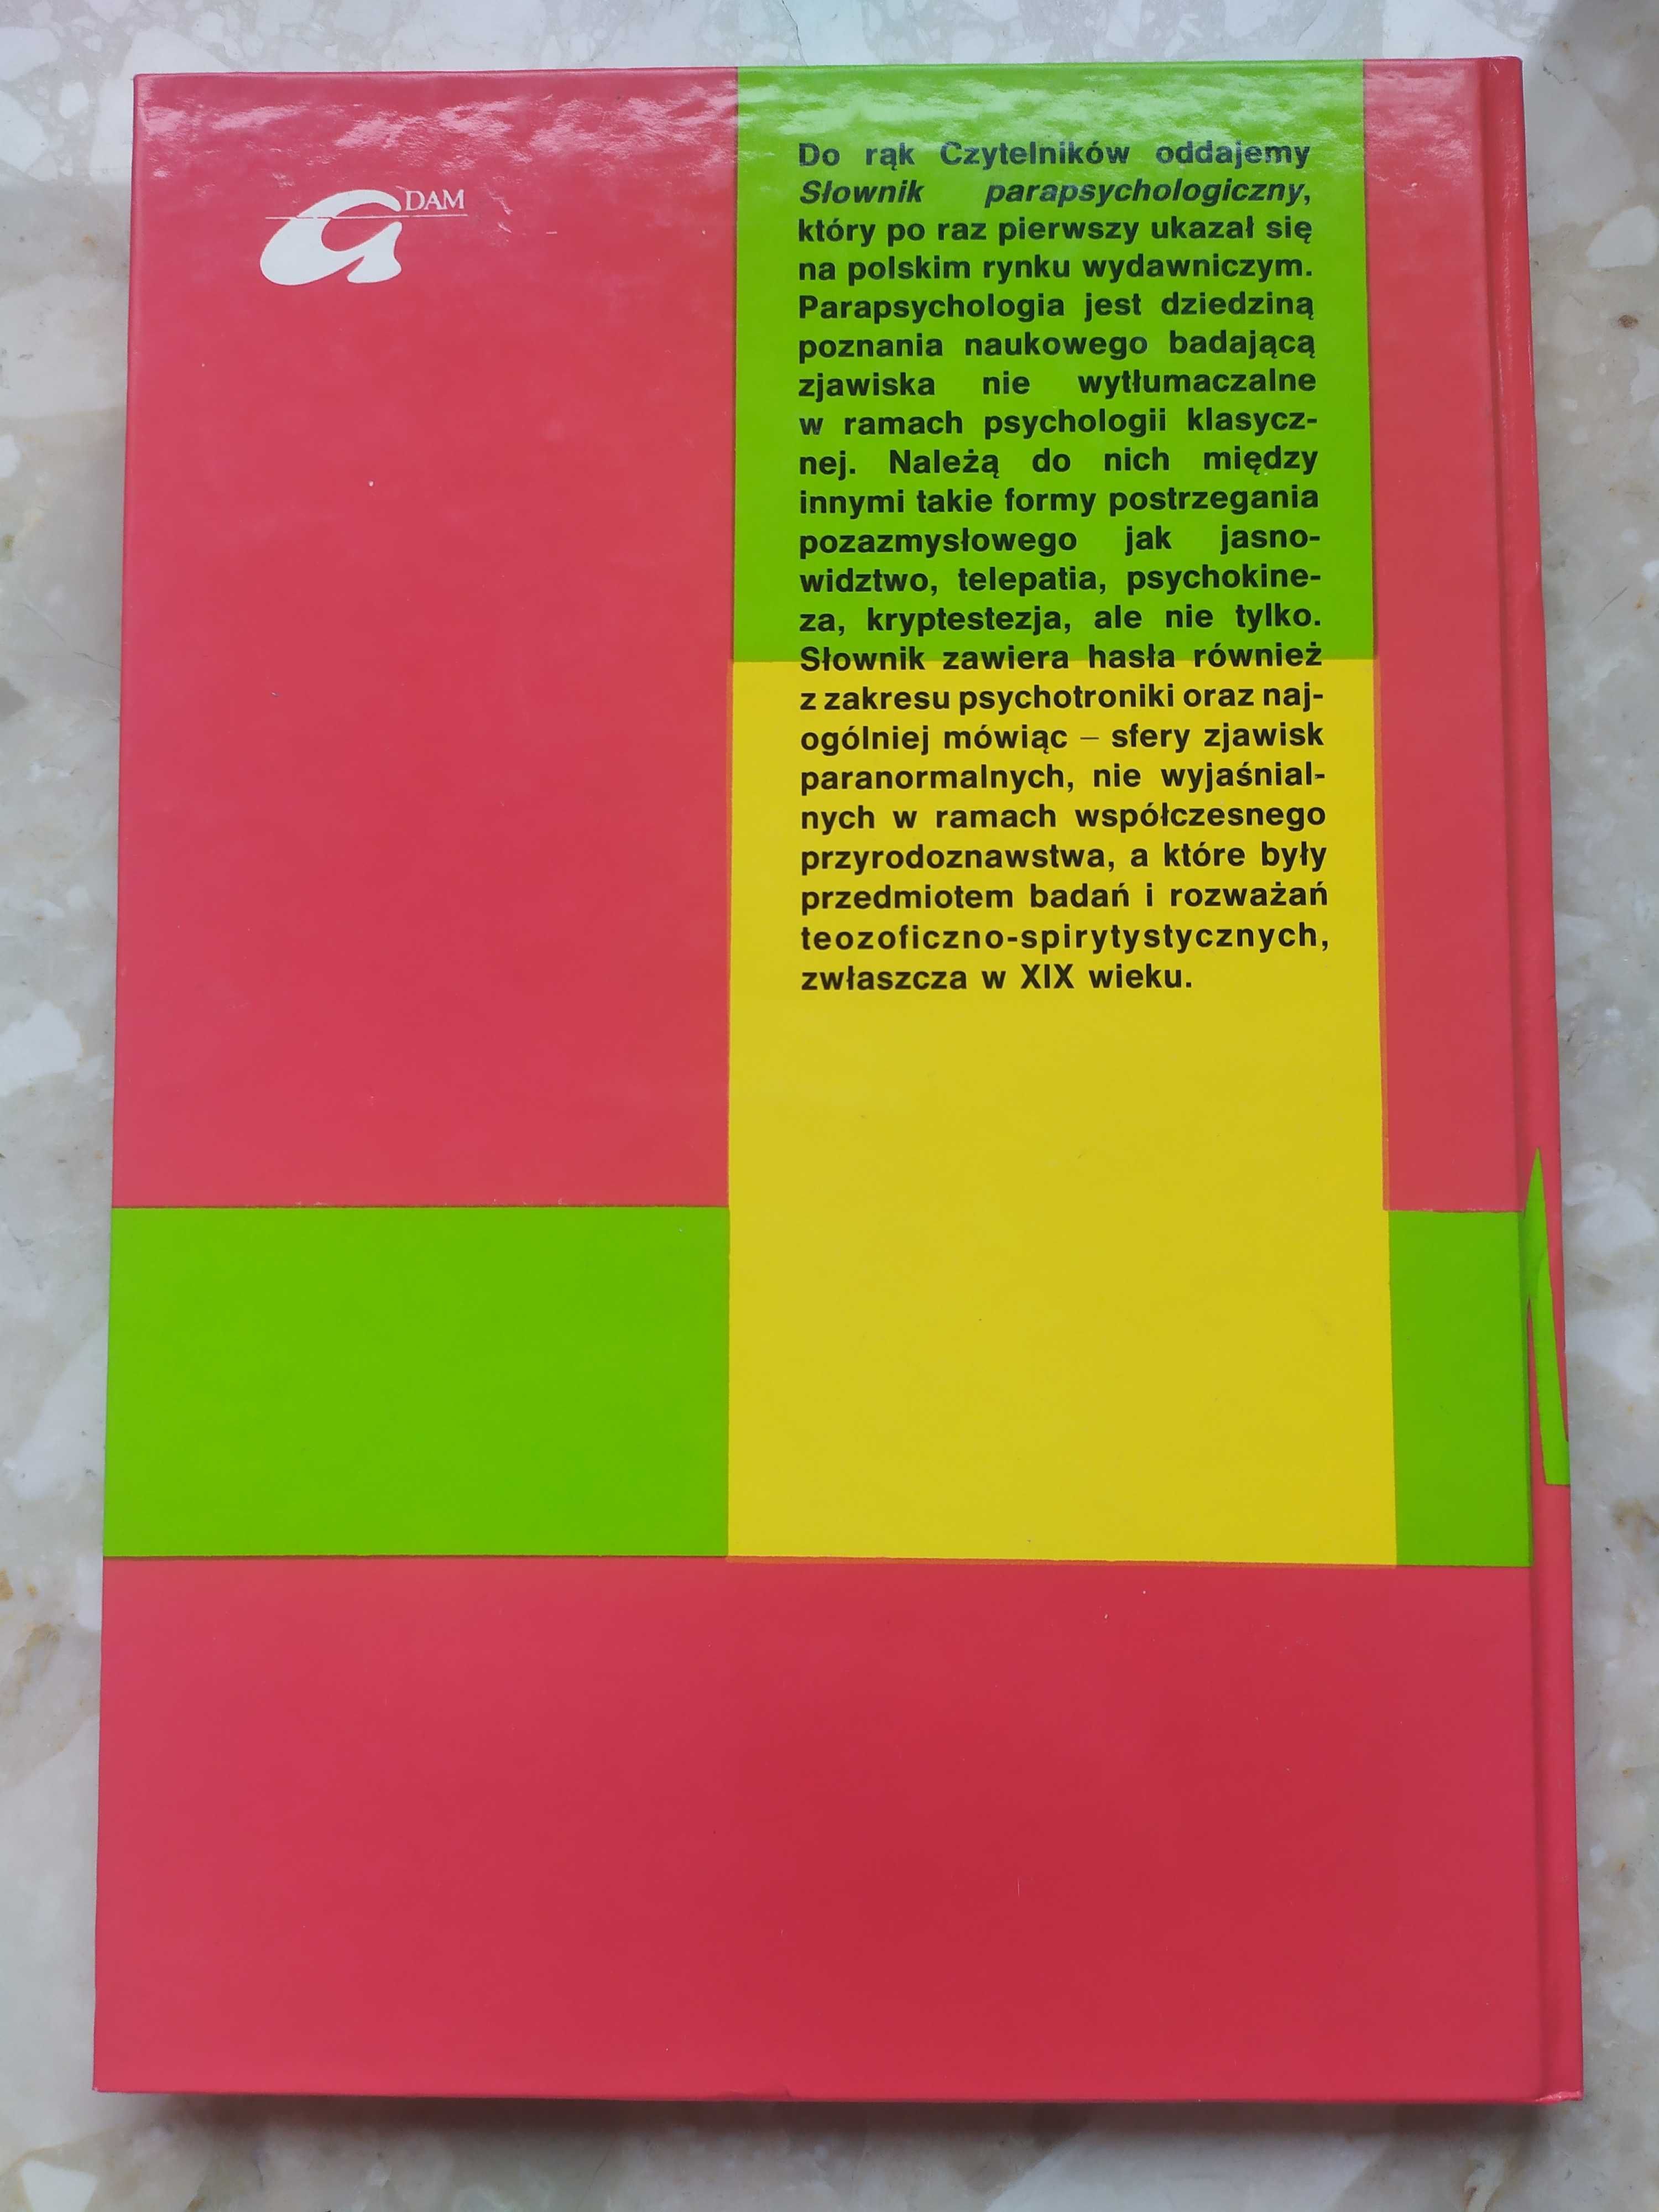 Słownik parapsychologiczny - Preus, Czupryńska, Perz